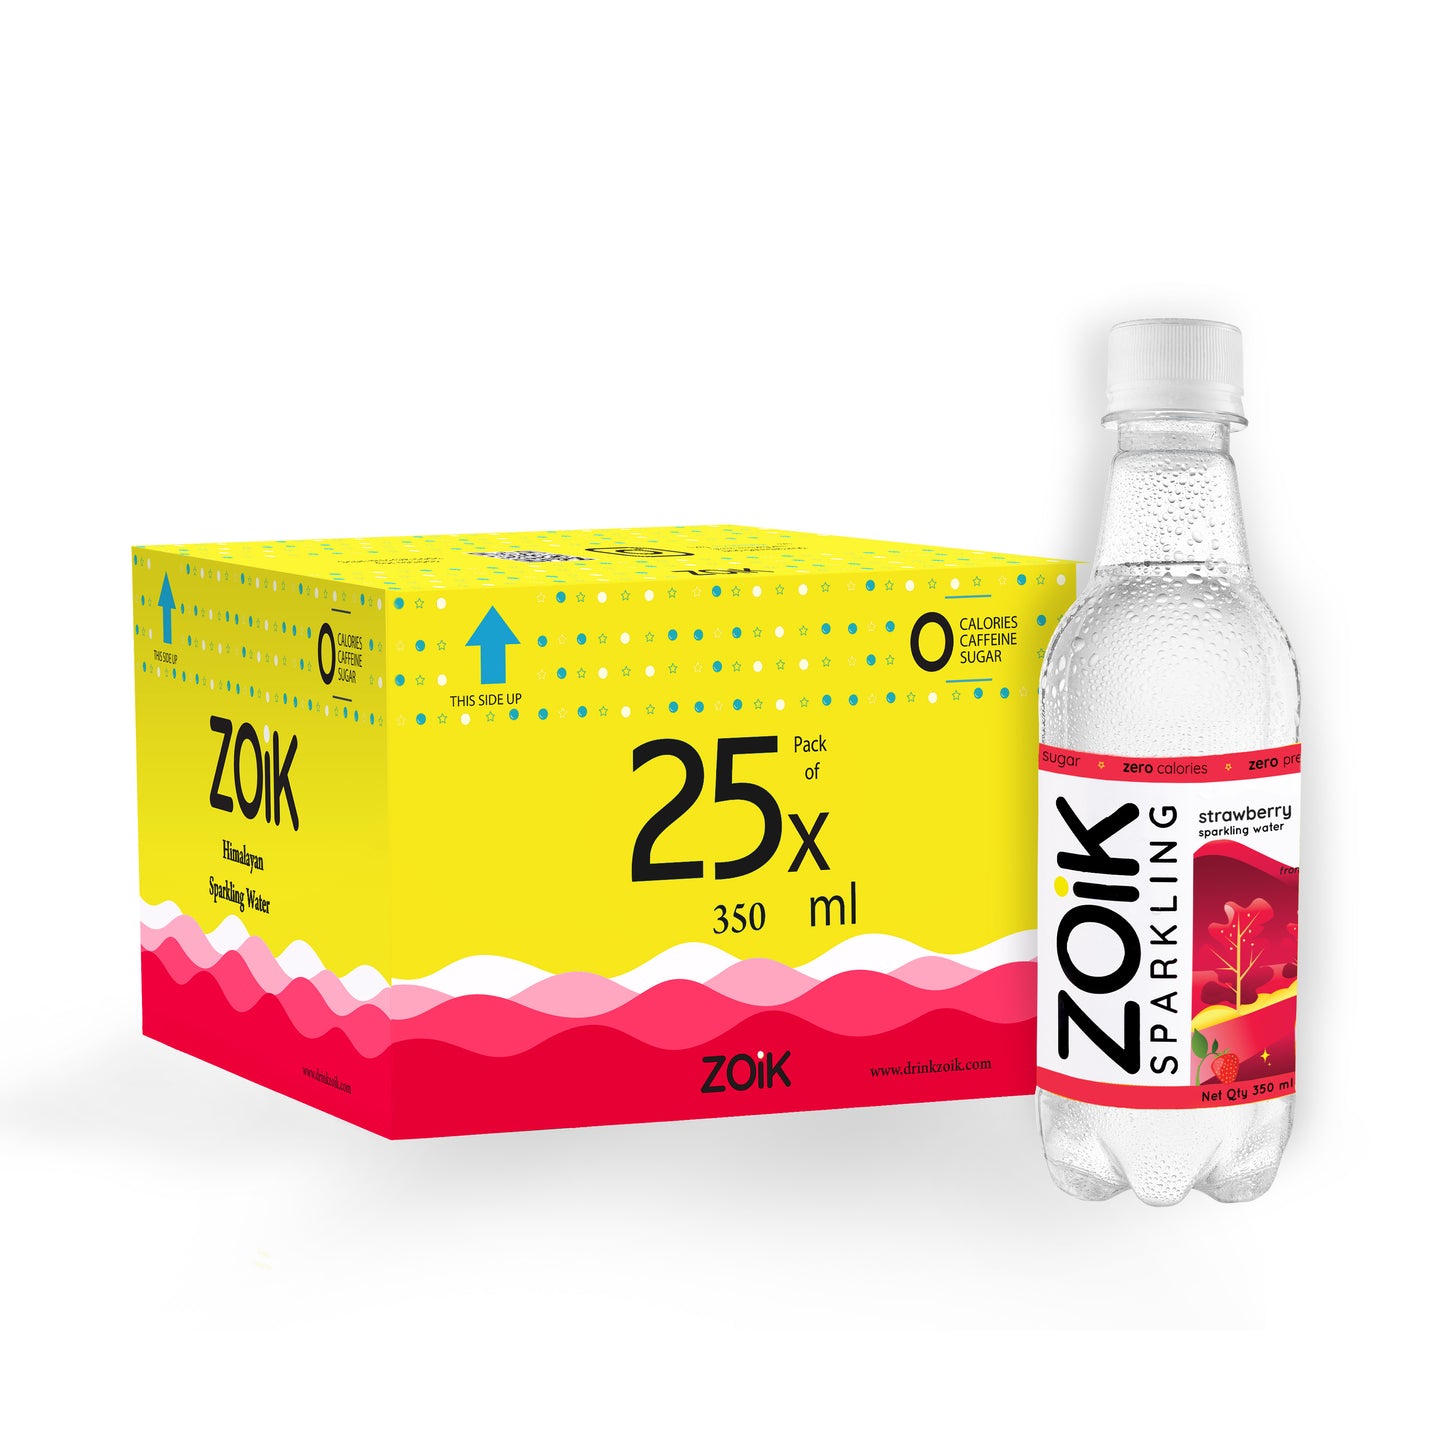 ZOiK Strawberry Flavoured Sparkling Water (350ml each)